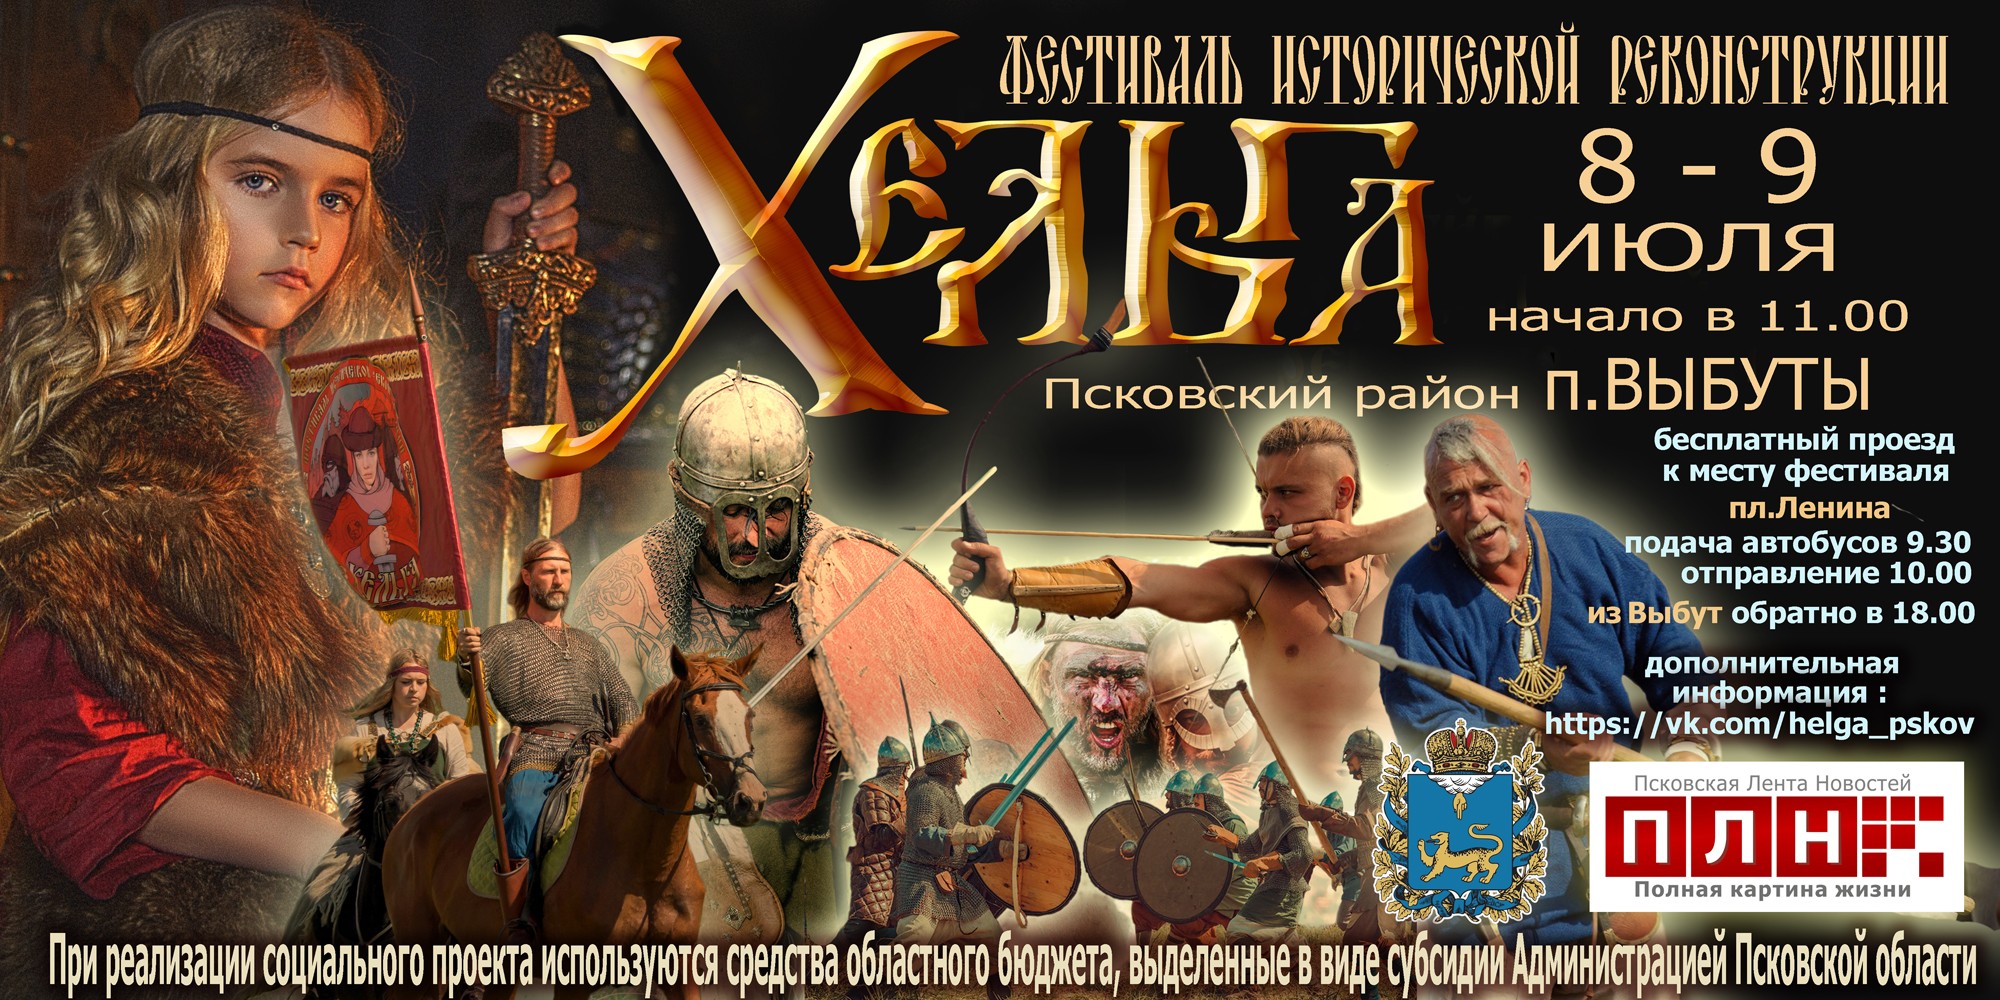 Баннер военно-исторического фестиваля "Хельга"